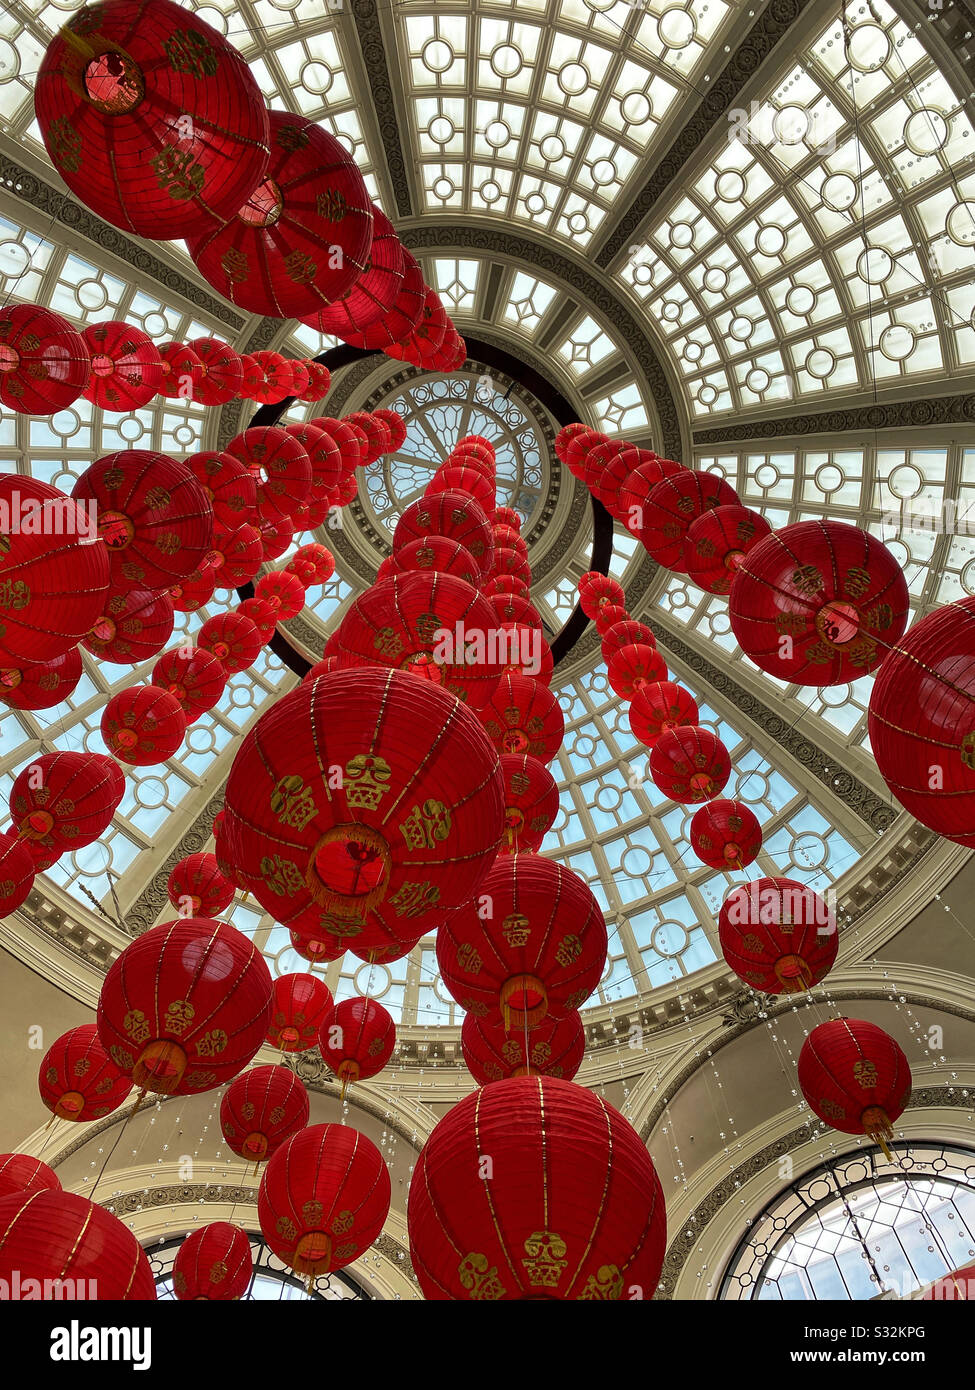 Decorazioni in lanterna rossa per Capodanno cinese appese al lucernario di un atrio del centro commerciale Foto Stock